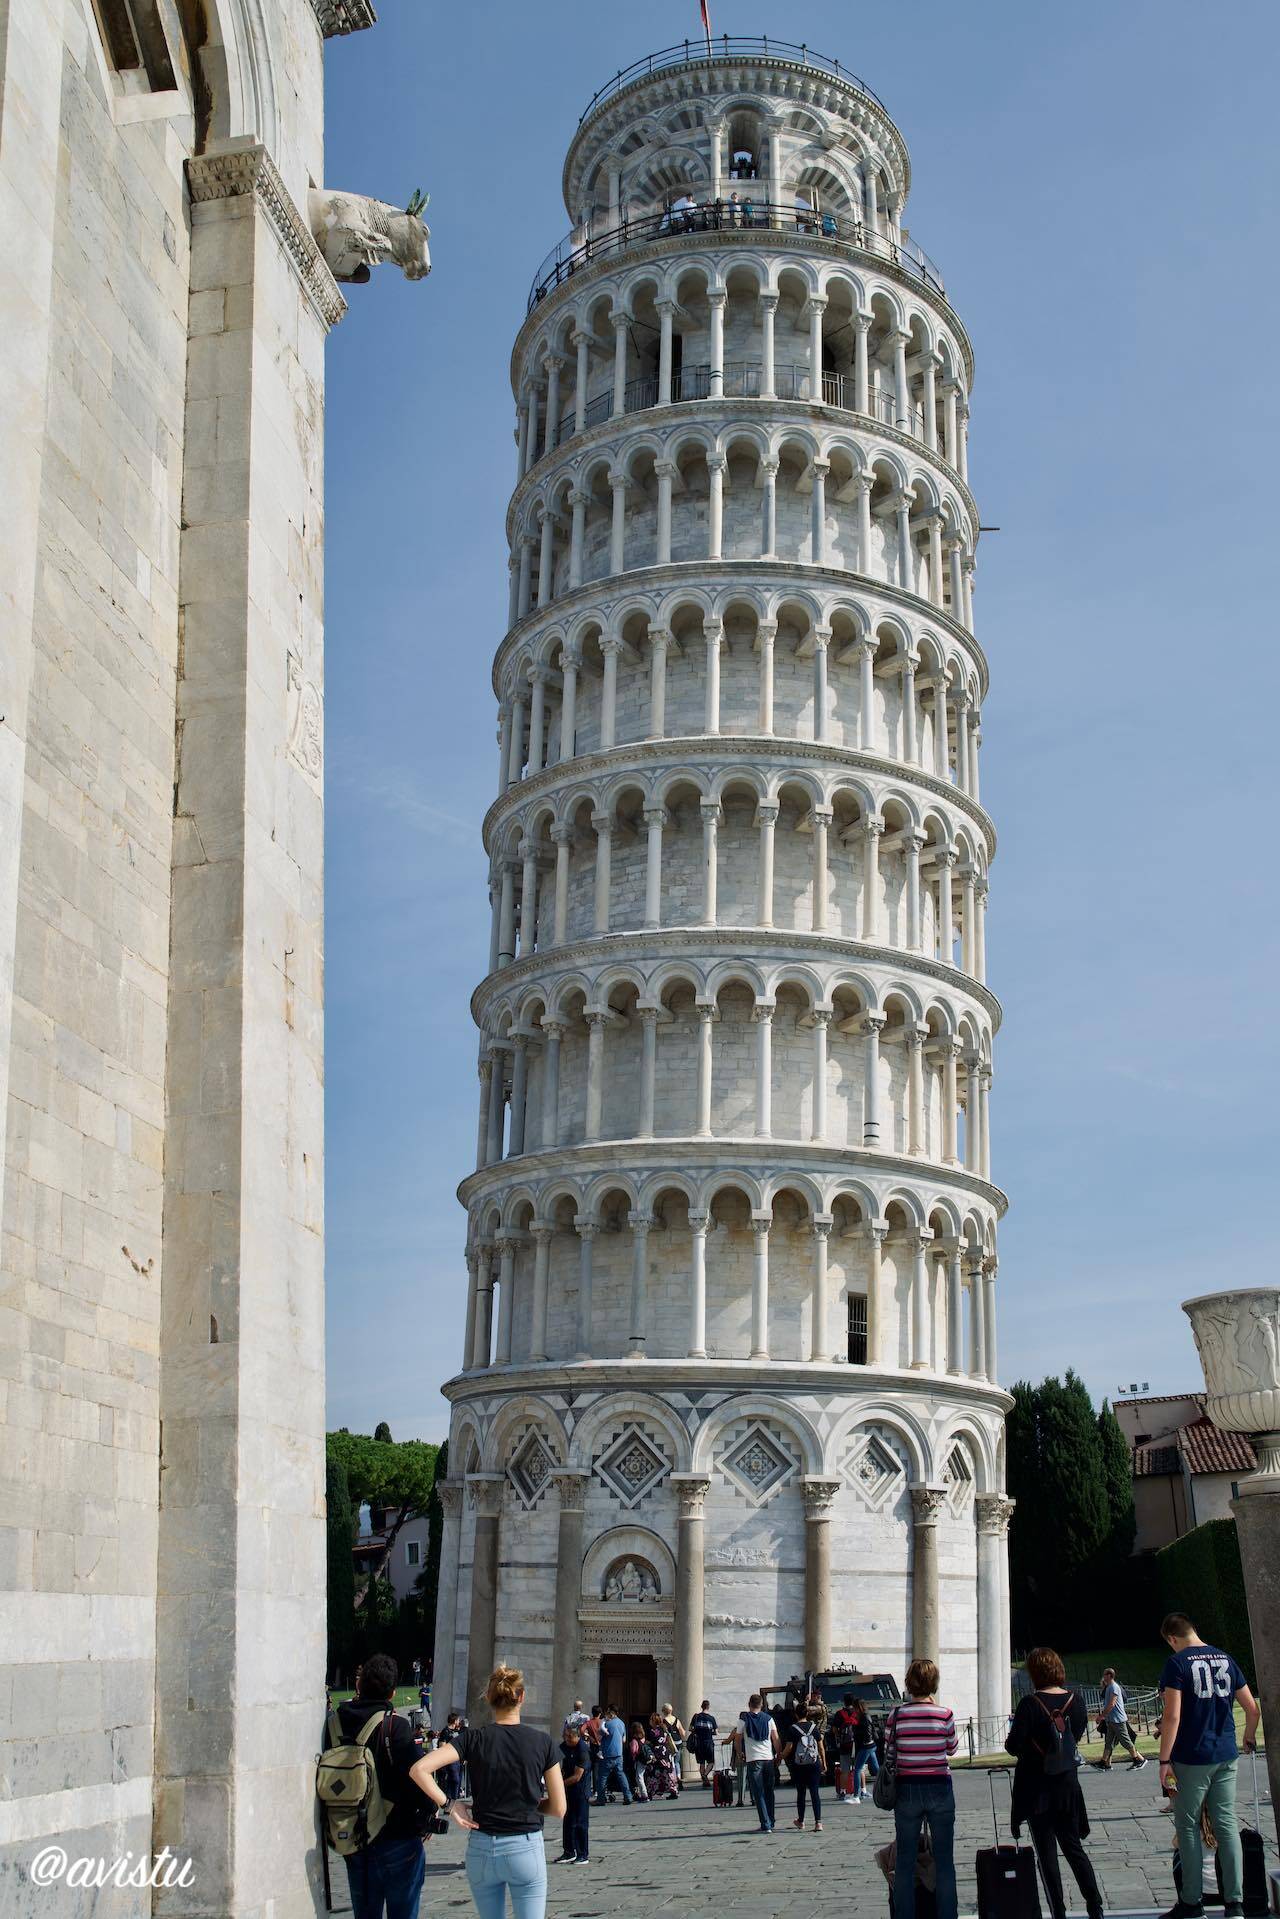 La inclinación de la torre se aprecia mejor comparada con la rectitud de la catedral [(c)Foto: @avistu}